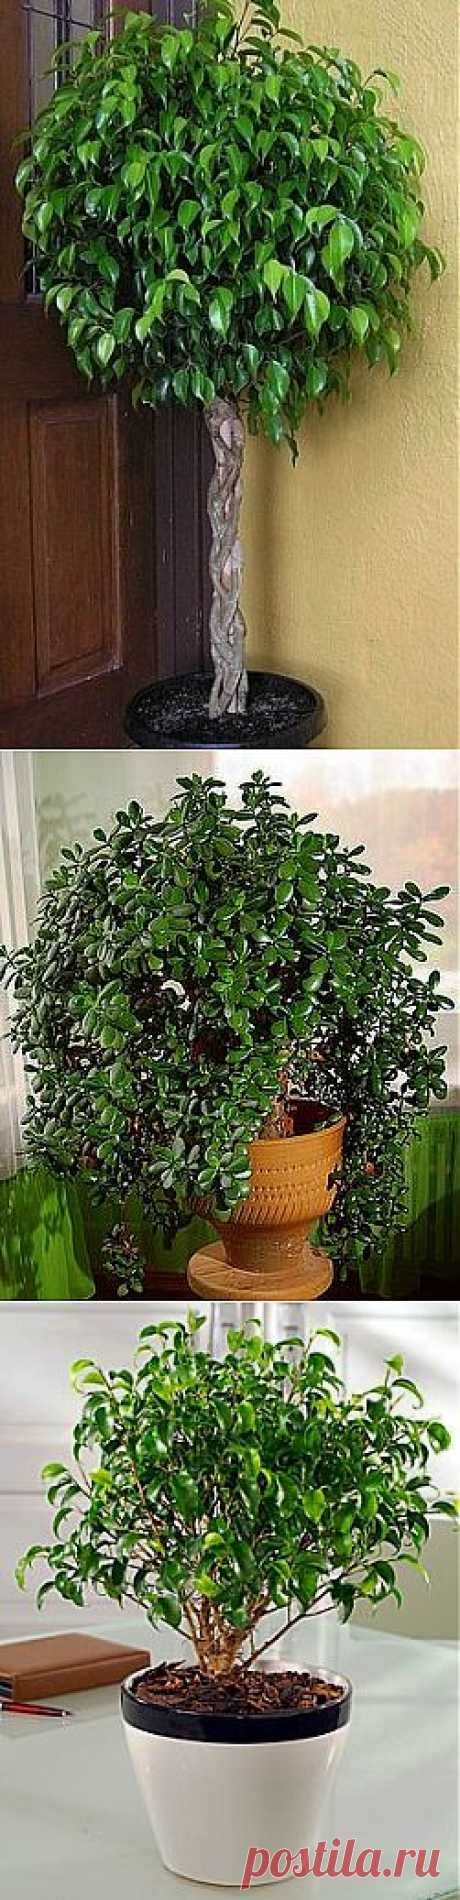 Почему опадают листья у комнатных растений - FB.ru